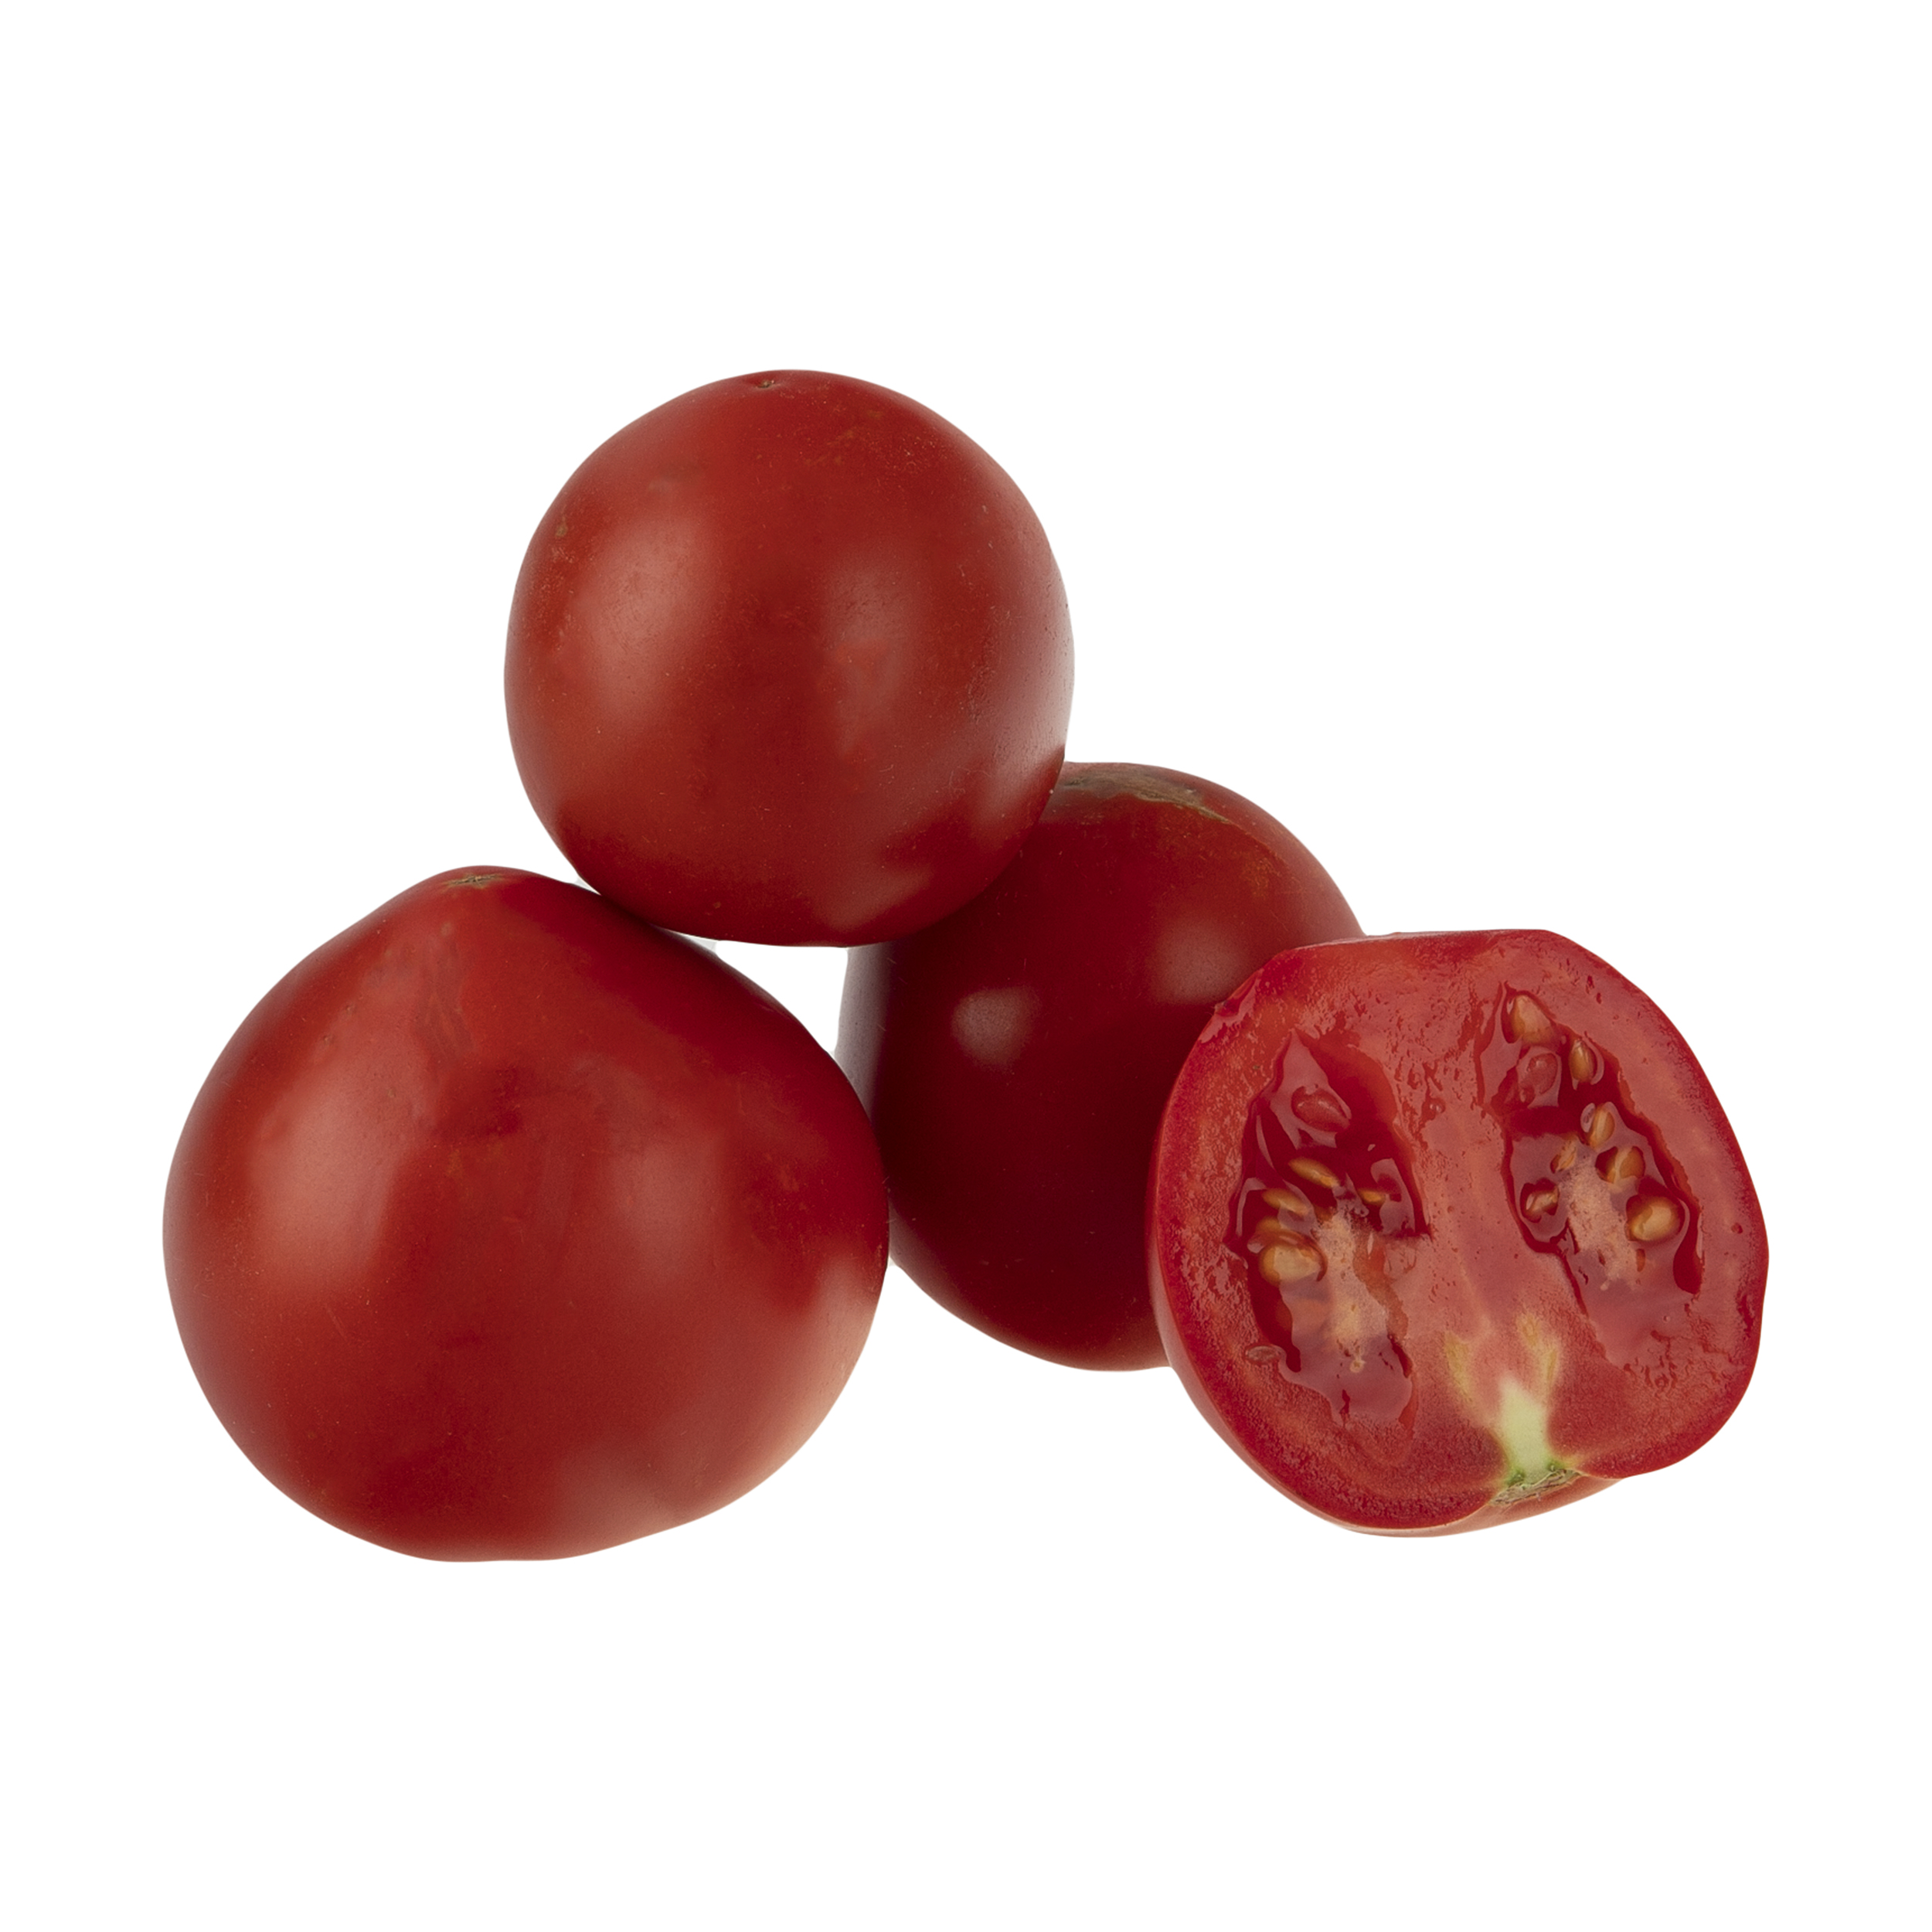 گوجه فرنگی اقتصادی میوکات - 1 کیلوگرم